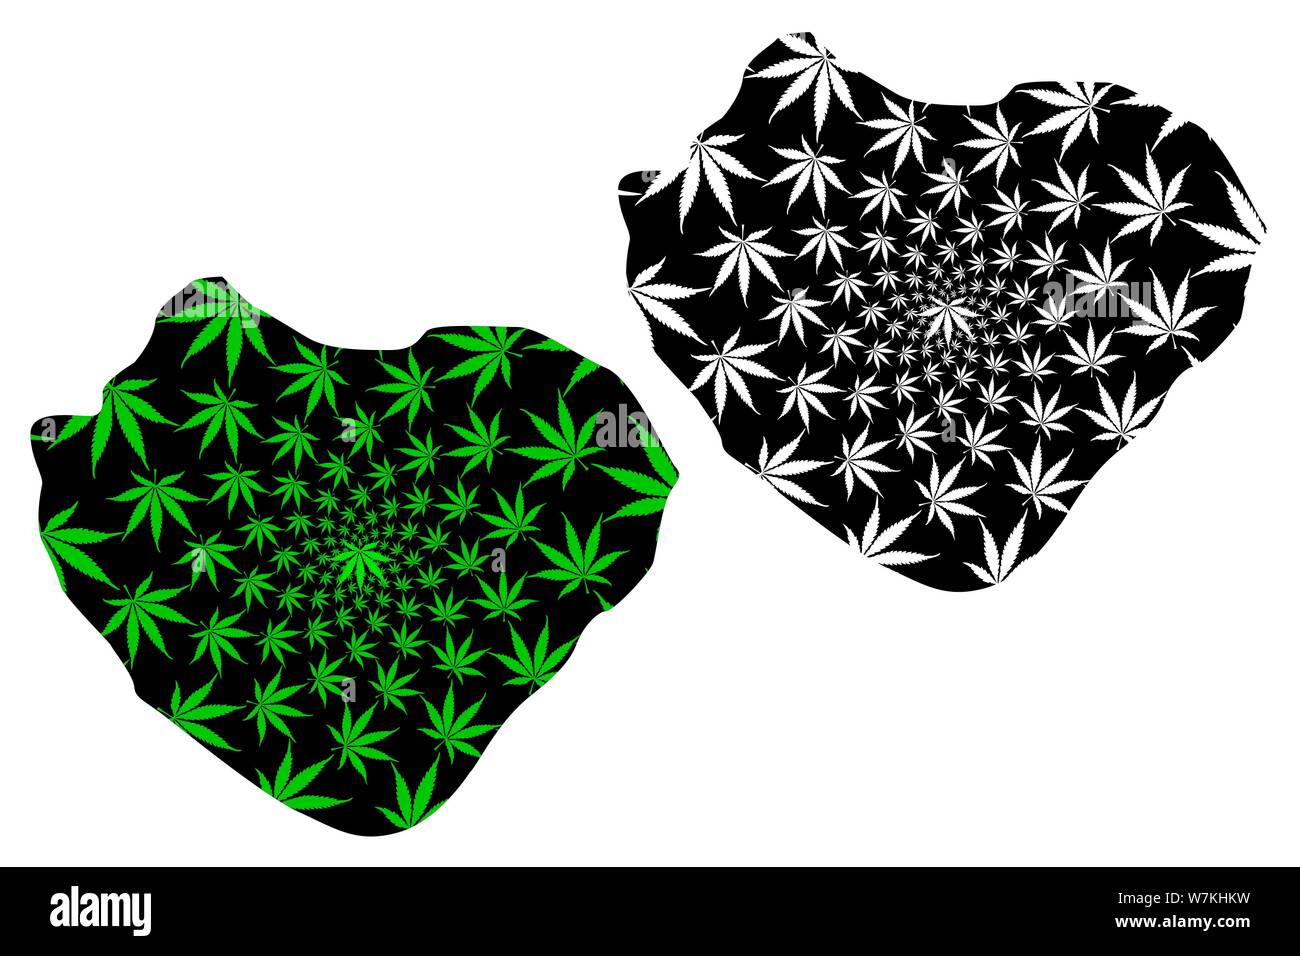 Isola Wowoni (suddivisioni di Indonesia, Province di Indonesia) mappa è progettato Cannabis leaf verde e nero, Wawonii mappa fatta di marijuana (marihu Illustrazione Vettoriale